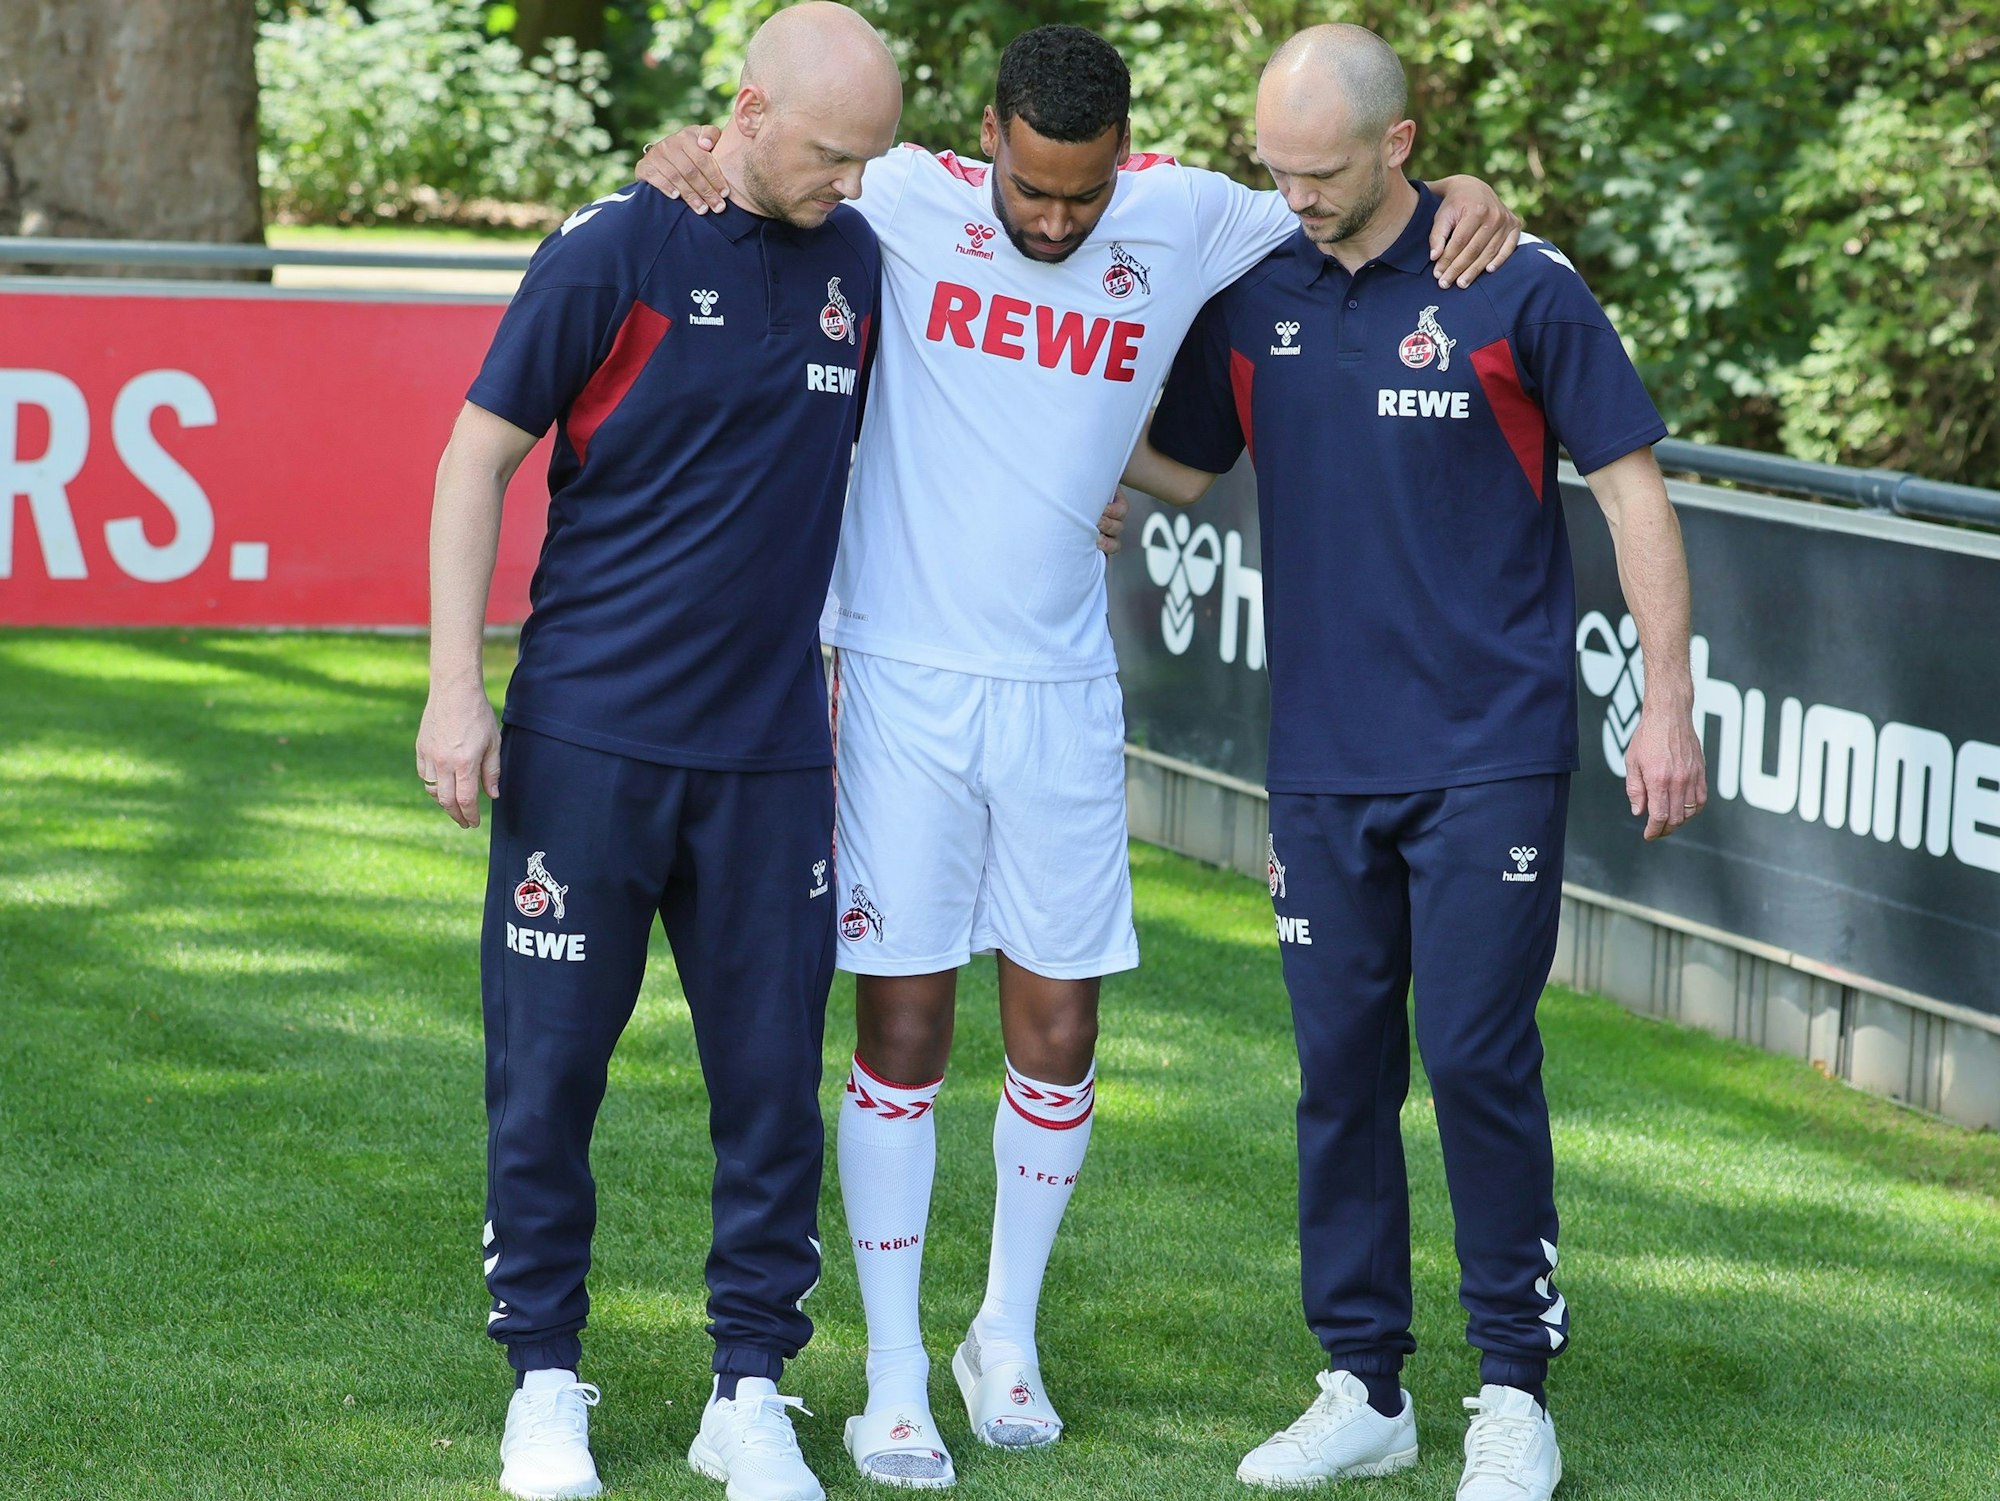 Linton Maina (1. FC Köln) musste verletzt zum Shooting gebracht werden.